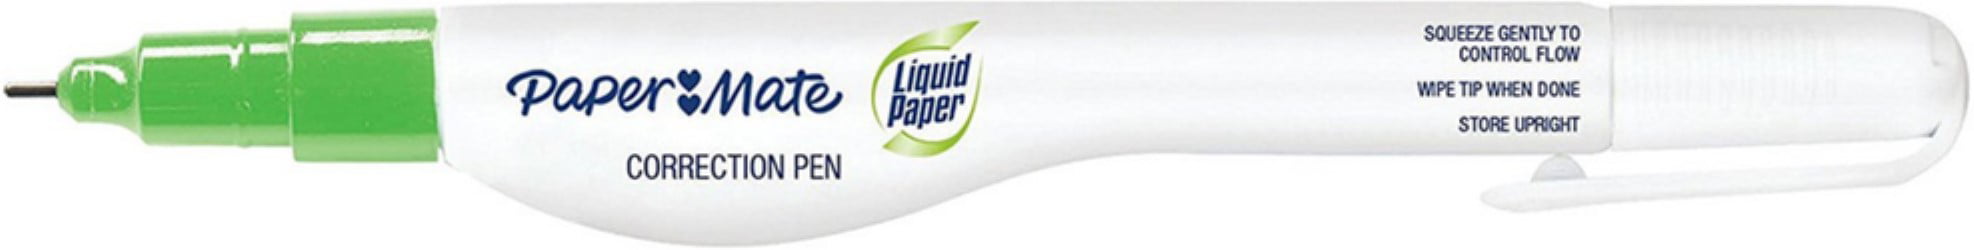 Liquid Paper Correction Pen 0.24 oz 